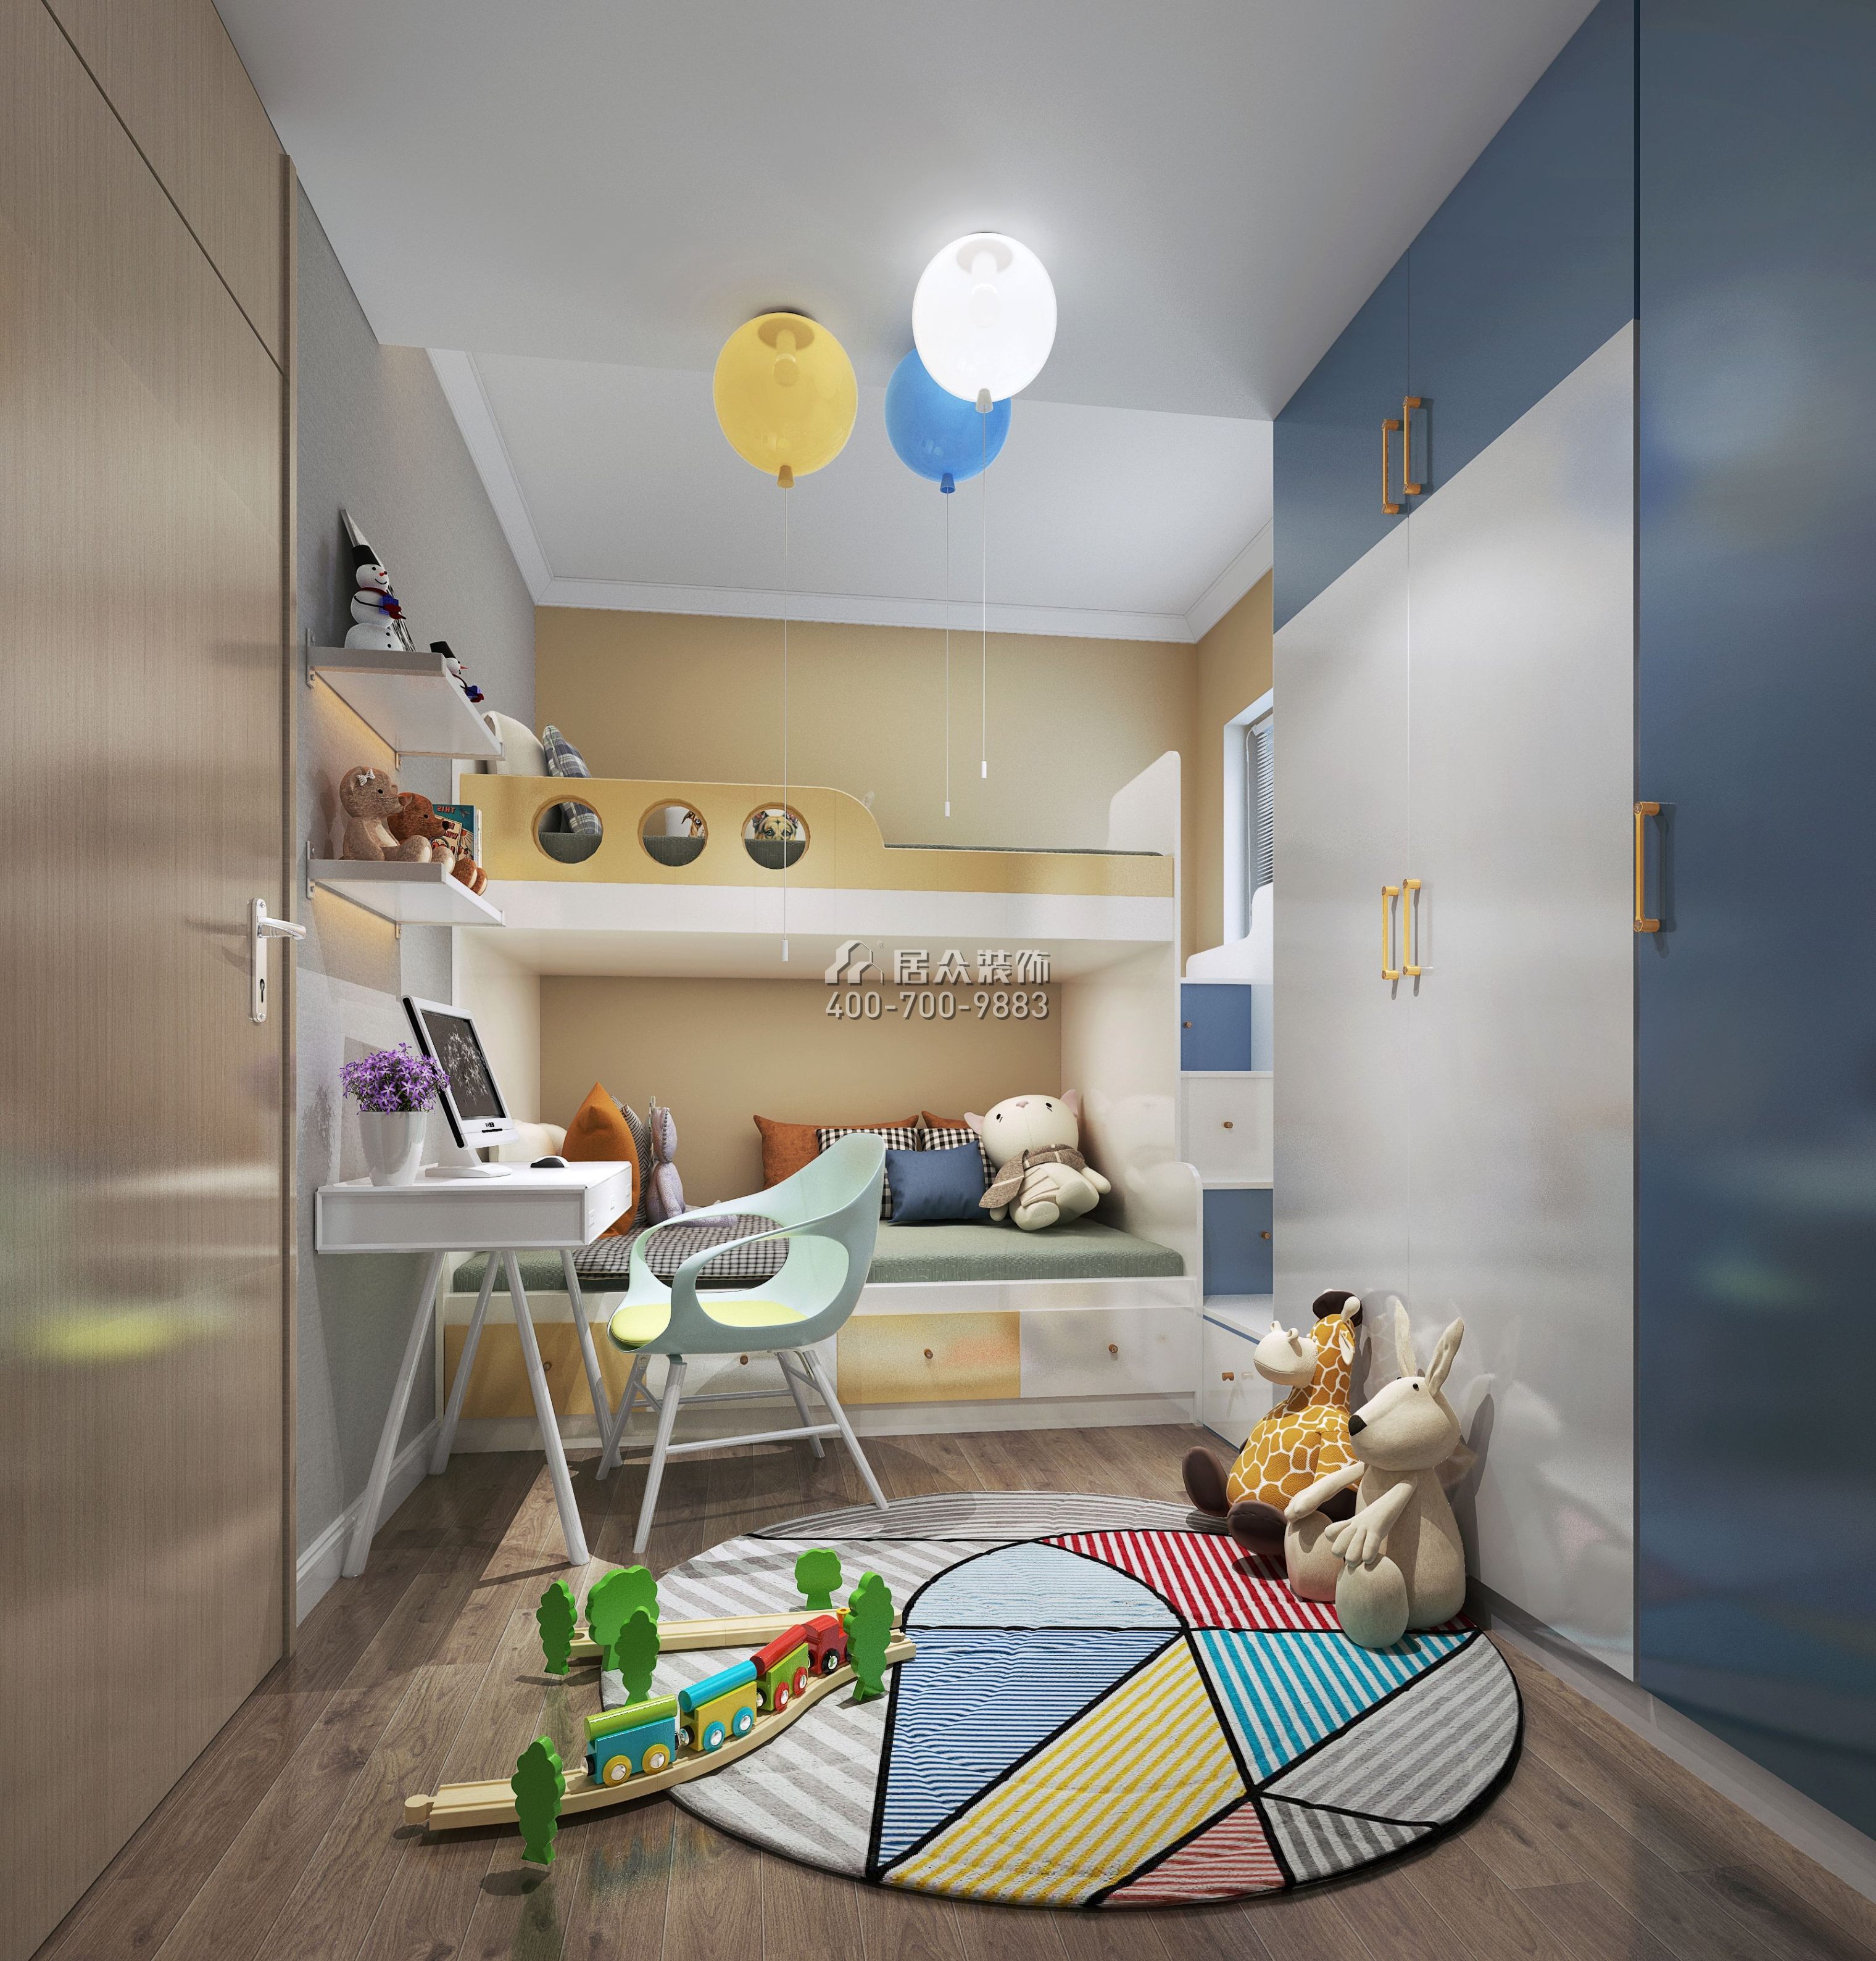 梧桐花園98平方米現代簡約風格平層戶型兒童房裝修效果圖